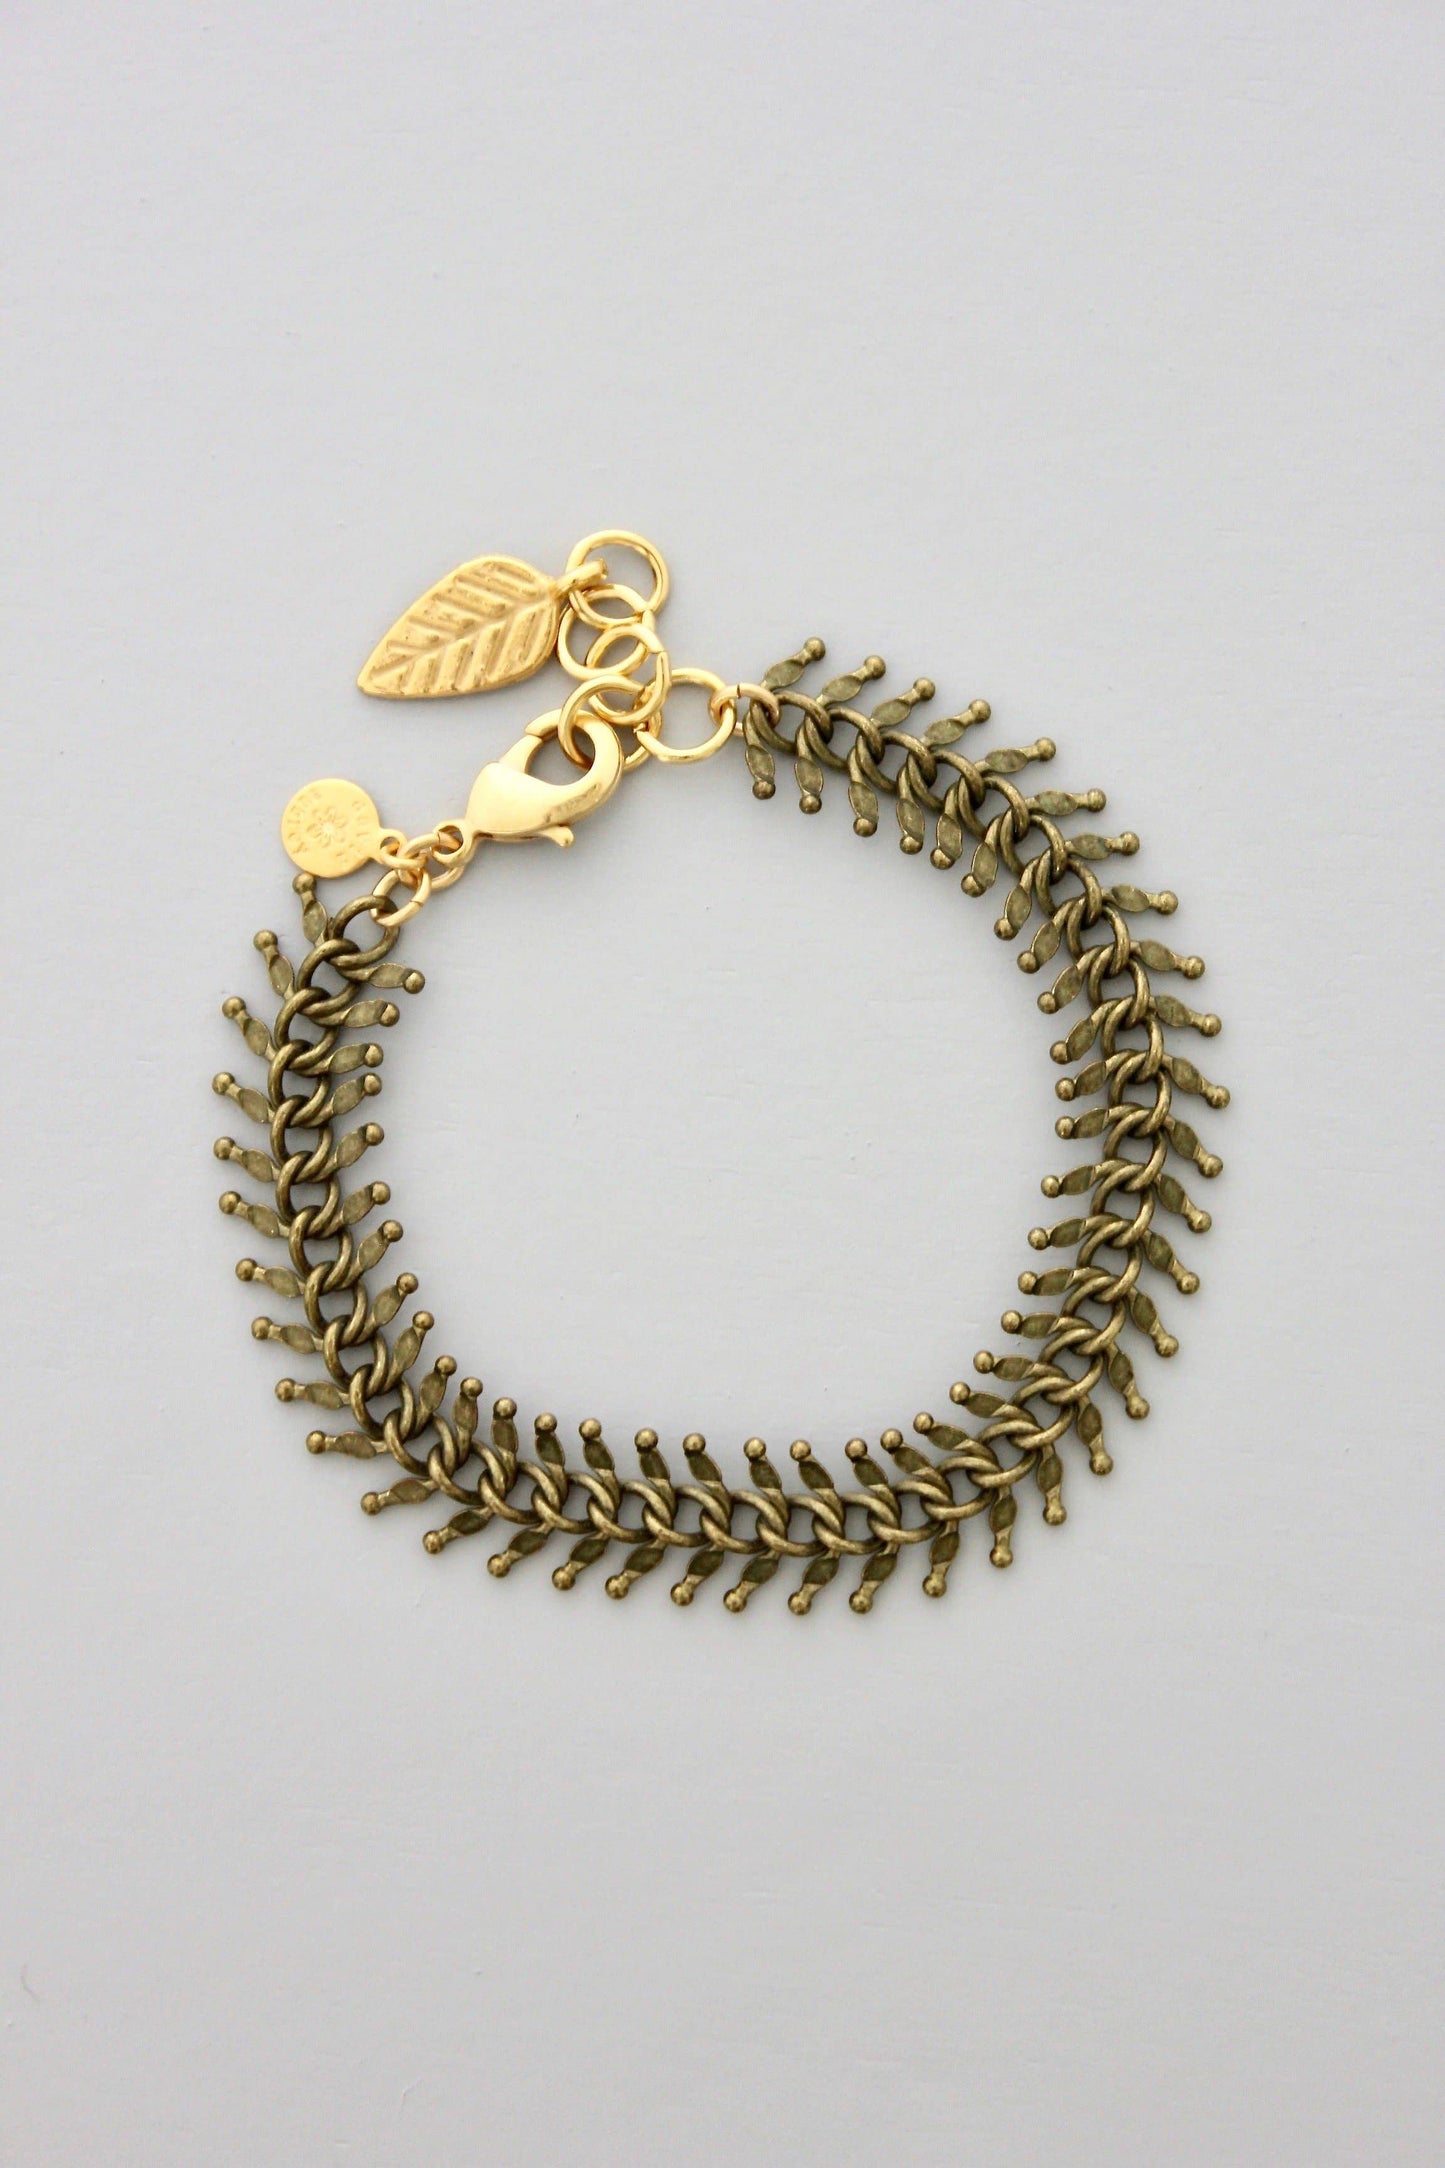 DORB19 Oxidized Brass Chain Bracelet